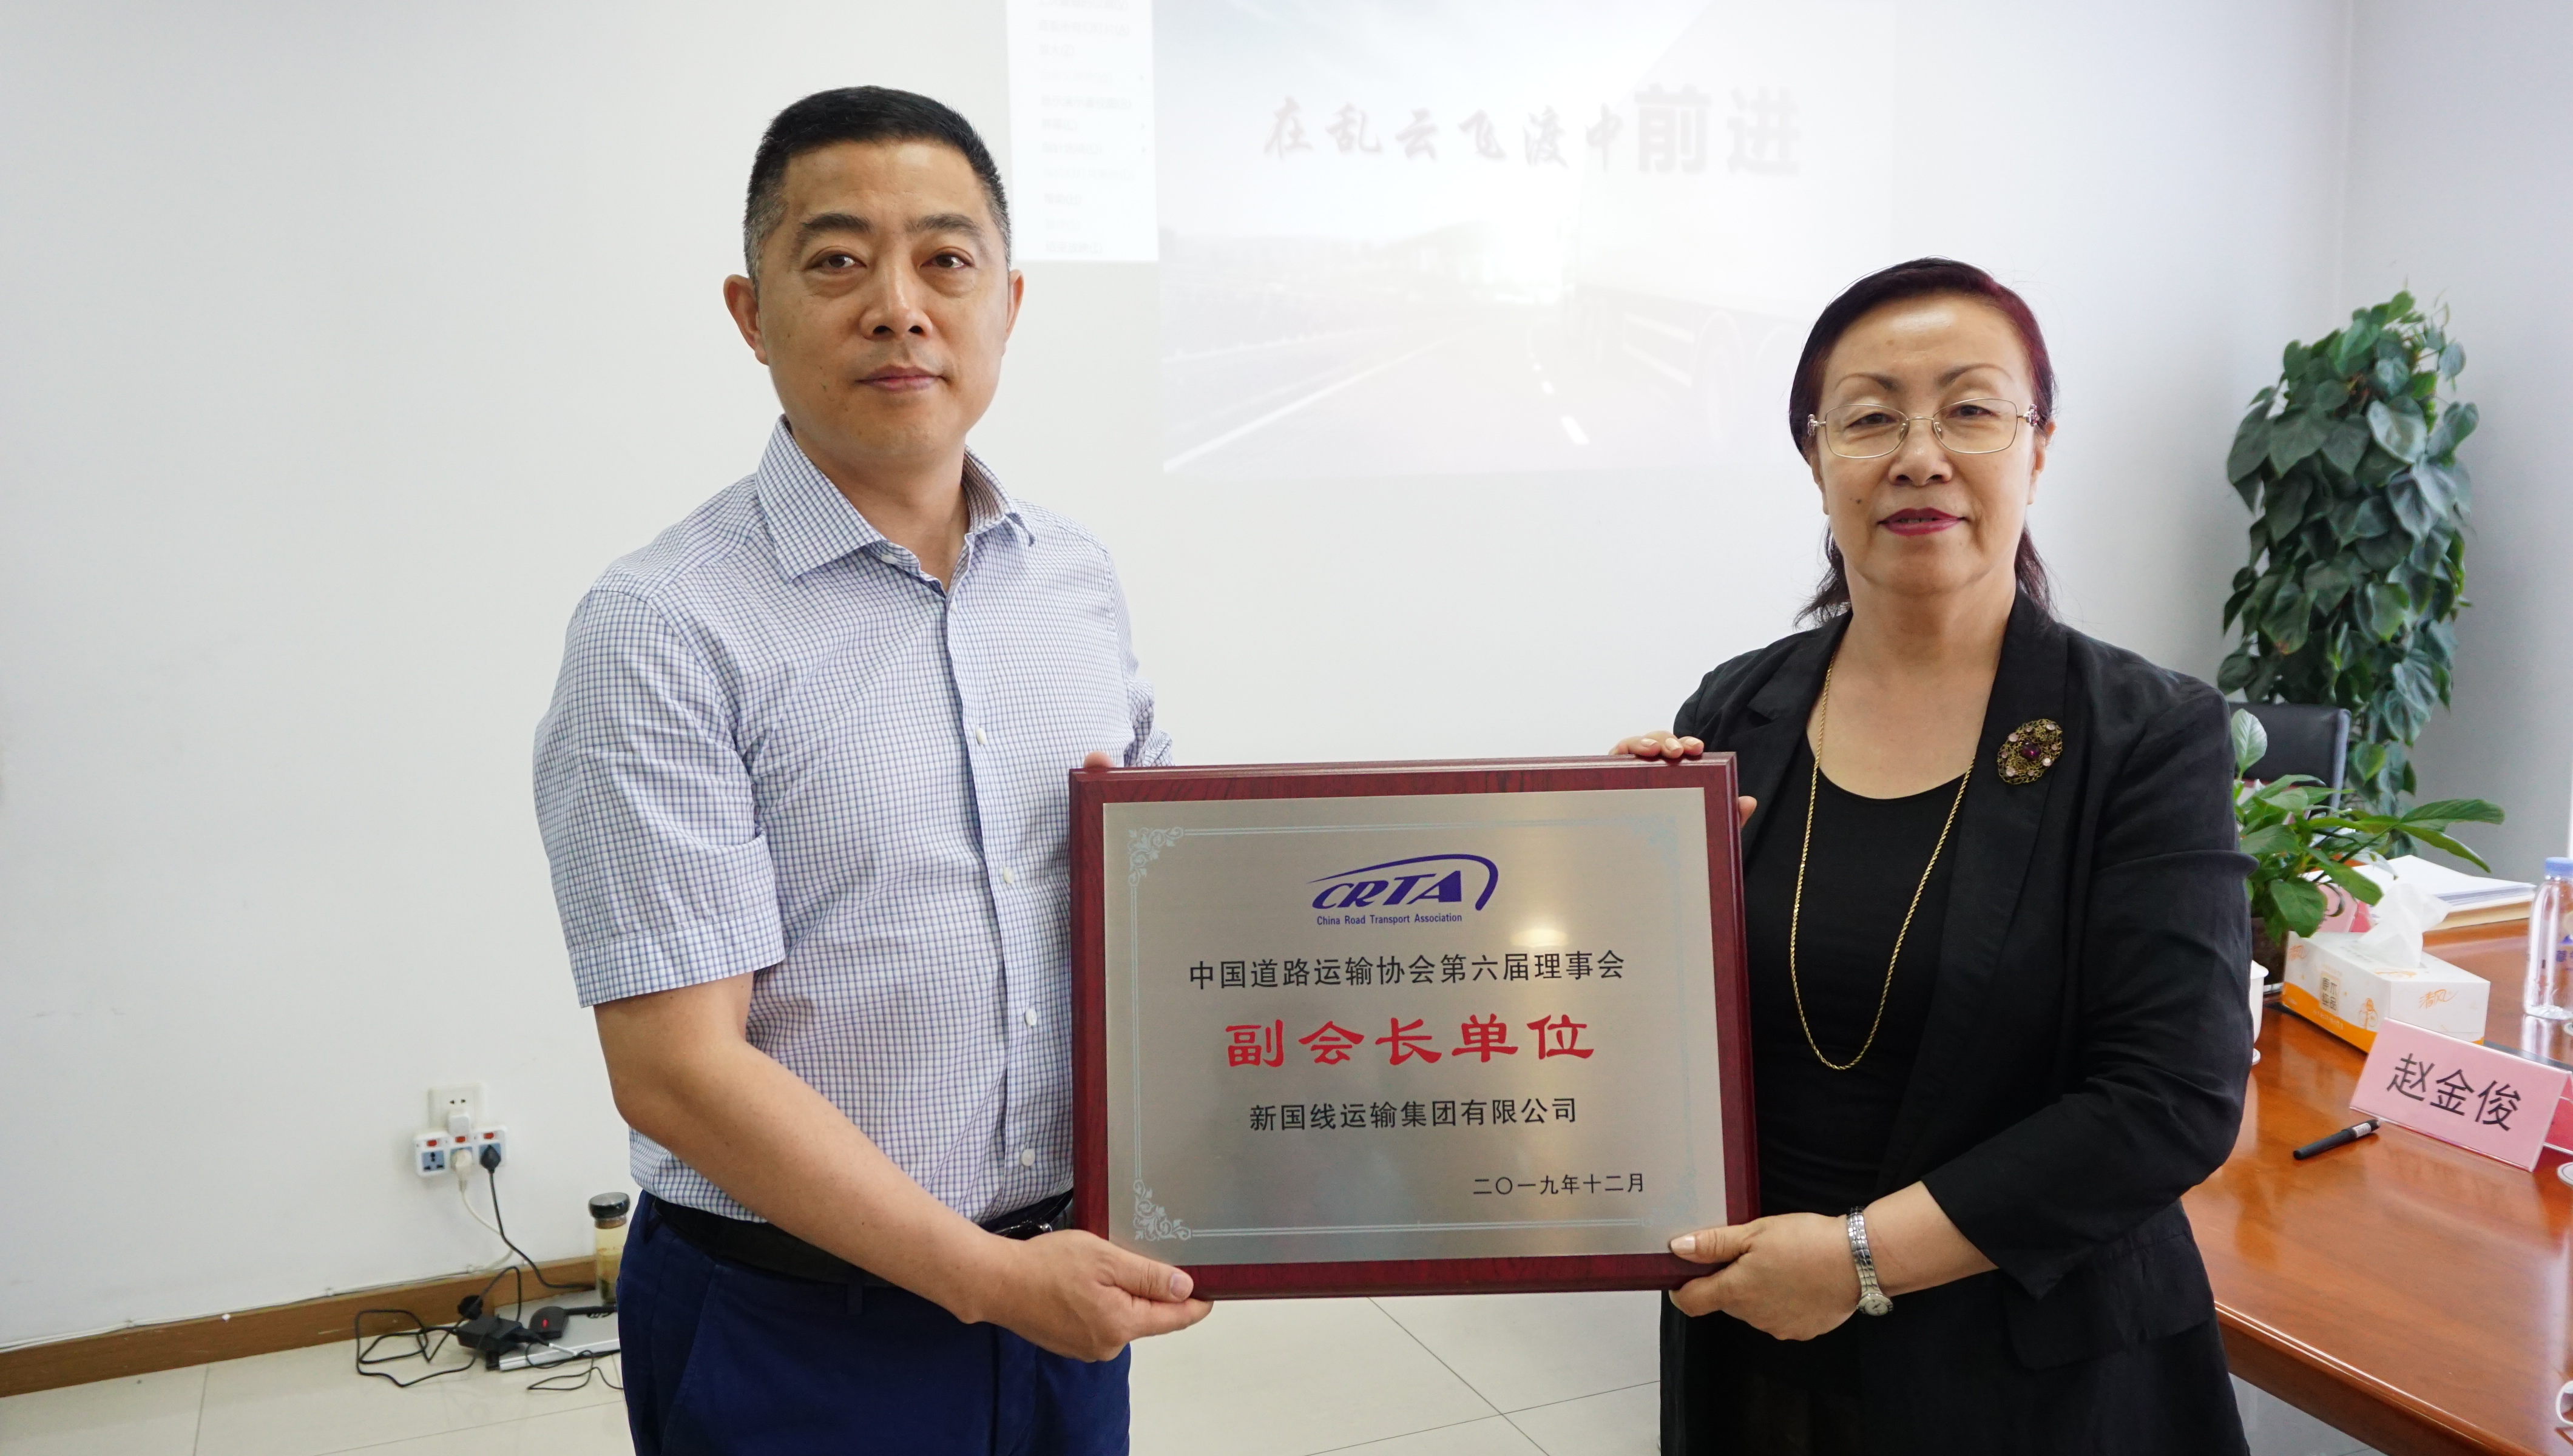 王丽梅会长向中国道路运输协会六届理事会各位副会长单位授牌。